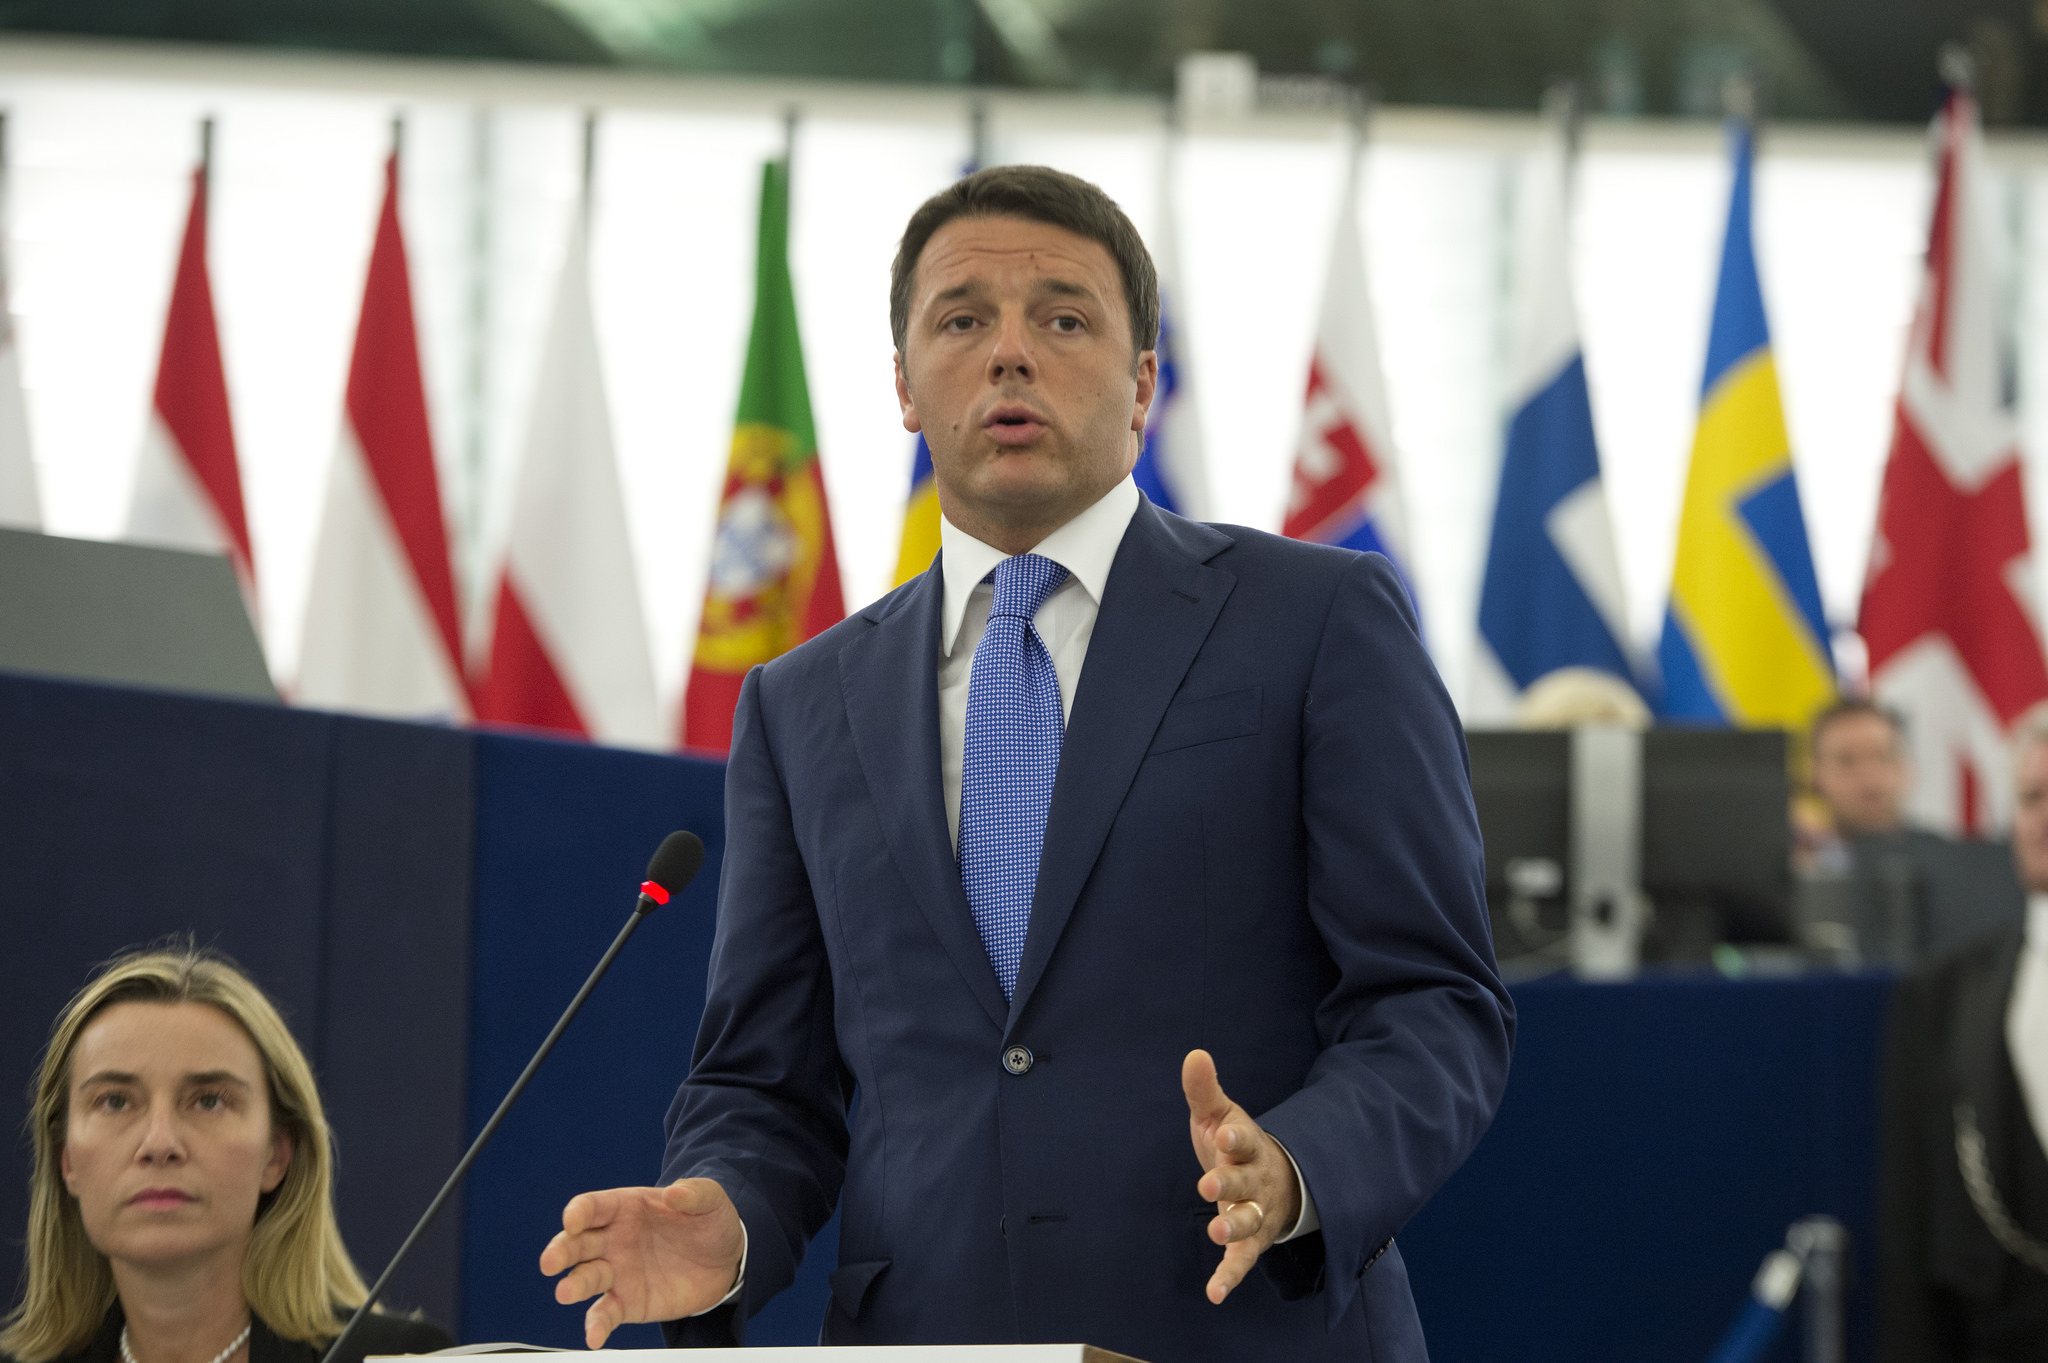 Italian pääministeri Matteo Renzi 